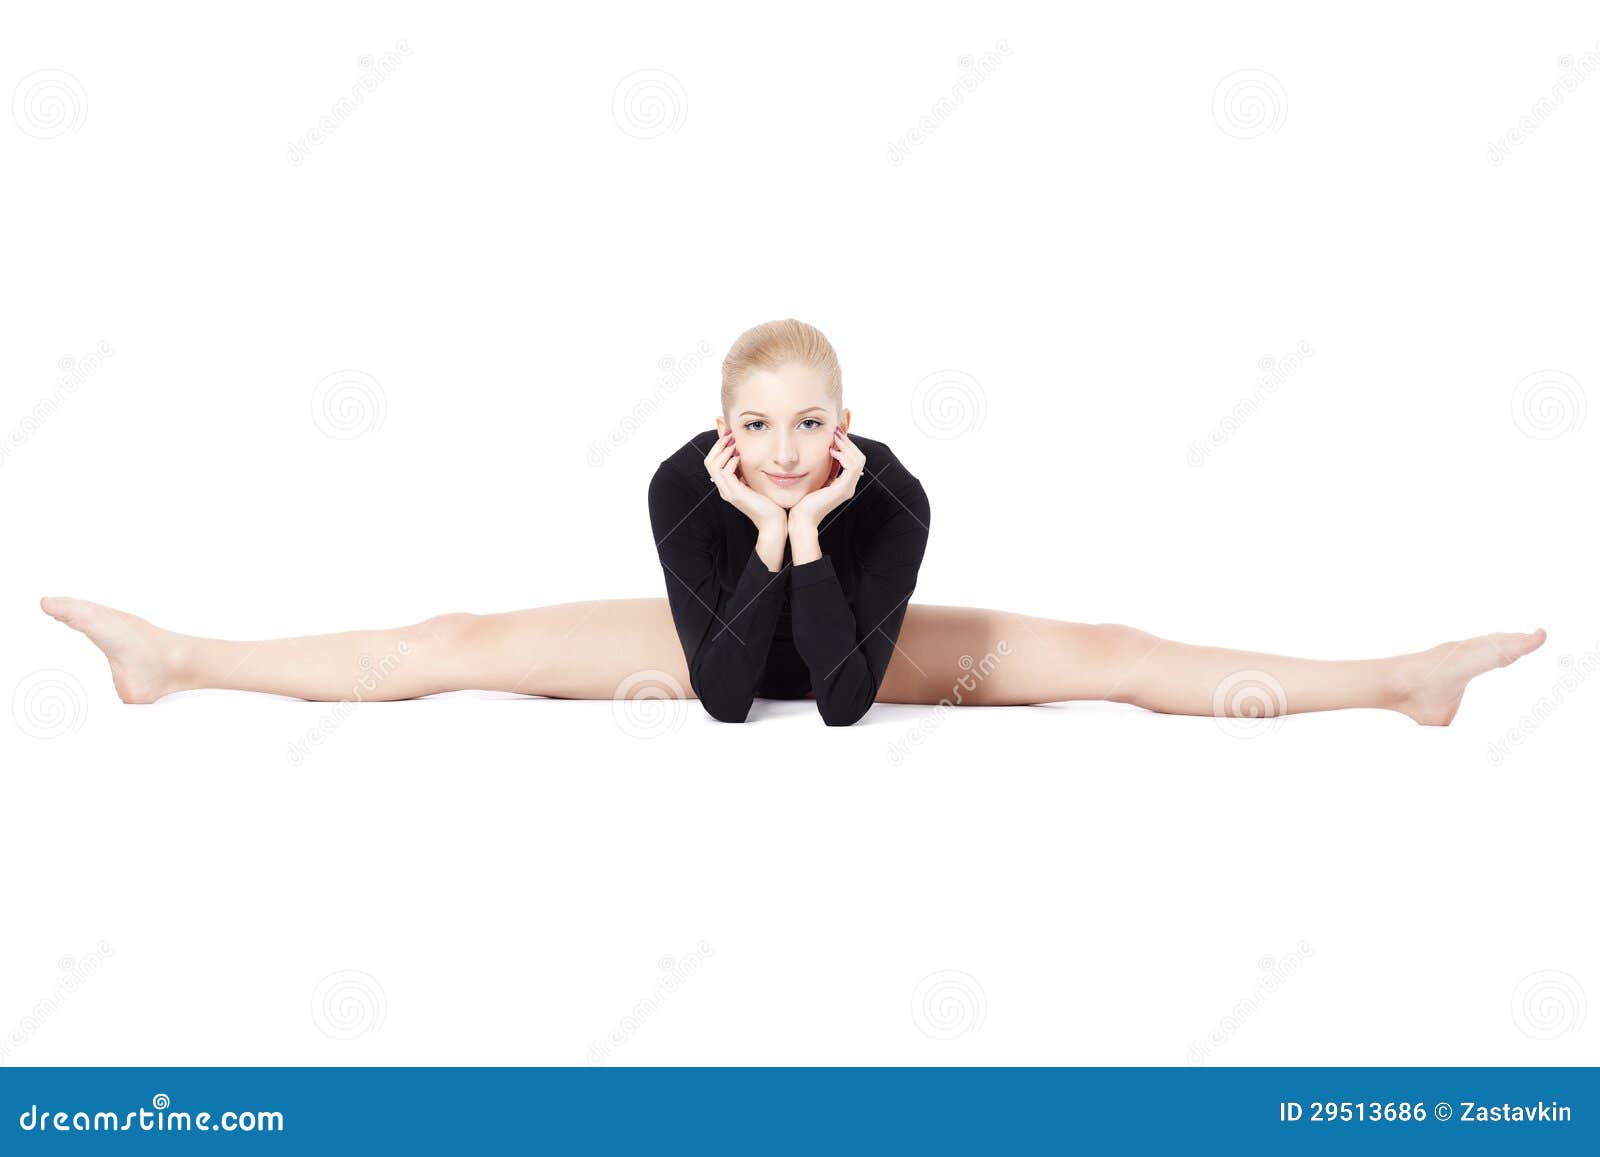 Blonde Gymnast - wide 2